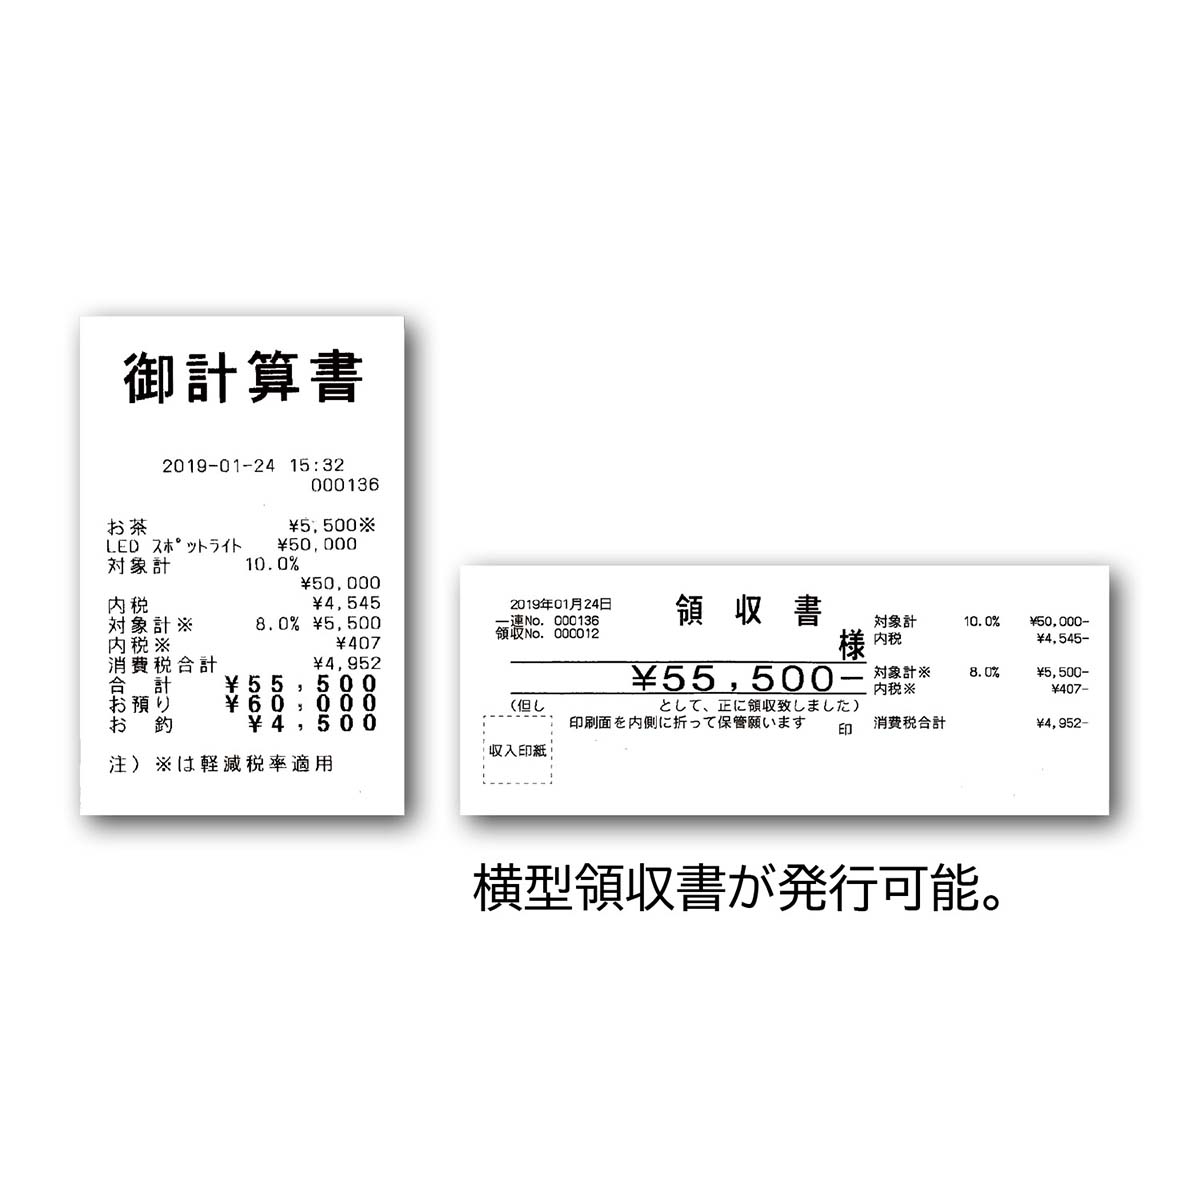 東芝テック レジスター MA-700-10 10部門タイプ ホワイト ロール紙10巻付き - 2